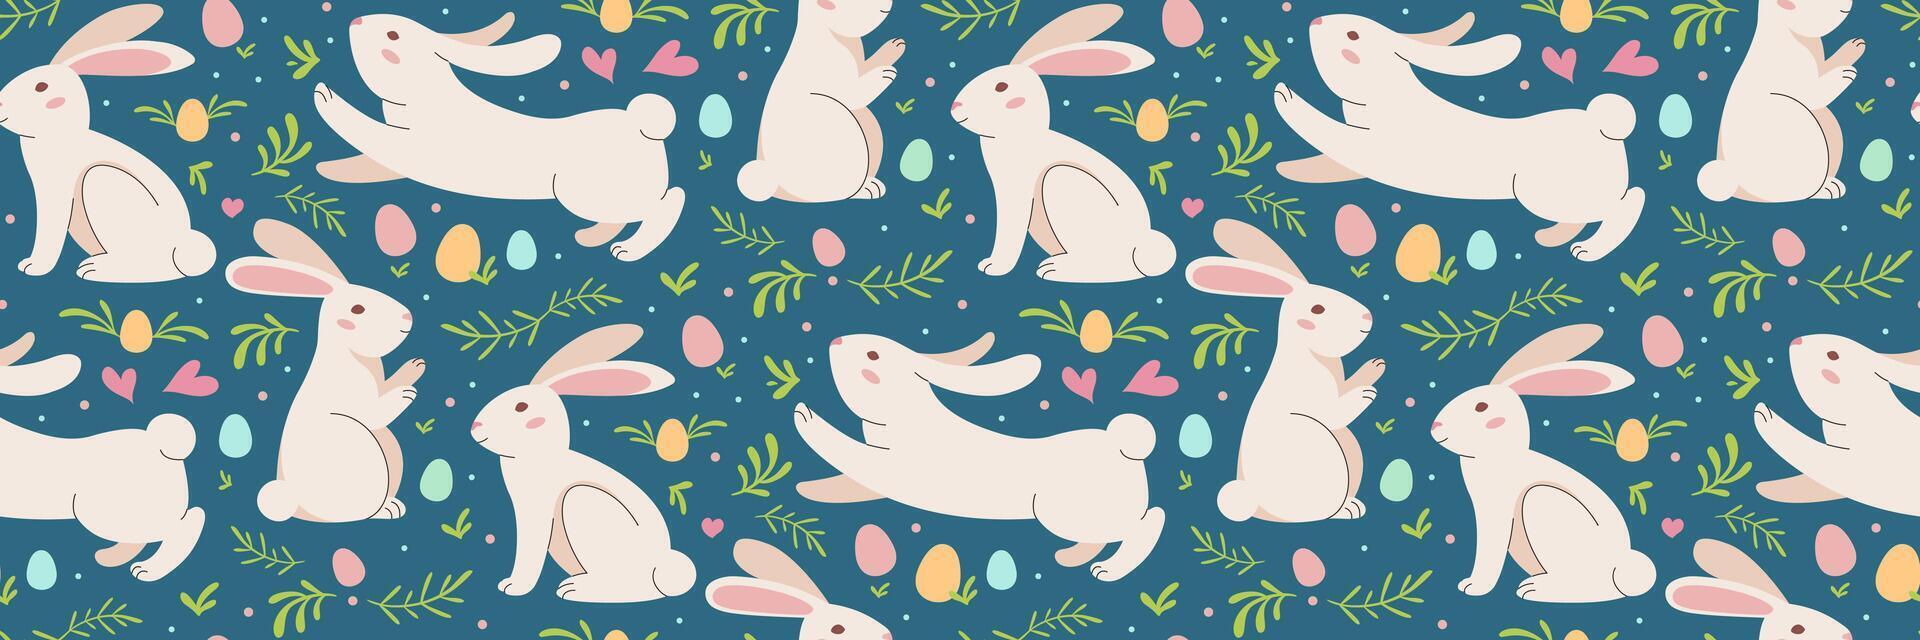 Pasen konijn blauw naadloos patroon. kleurrijk Pasen eieren. kleur eieren met konijntjes, vegetatie. traditioneel feestelijk achtergrond. voor groet kaarten, banier, textiel, achtergronden. vector illustratie.